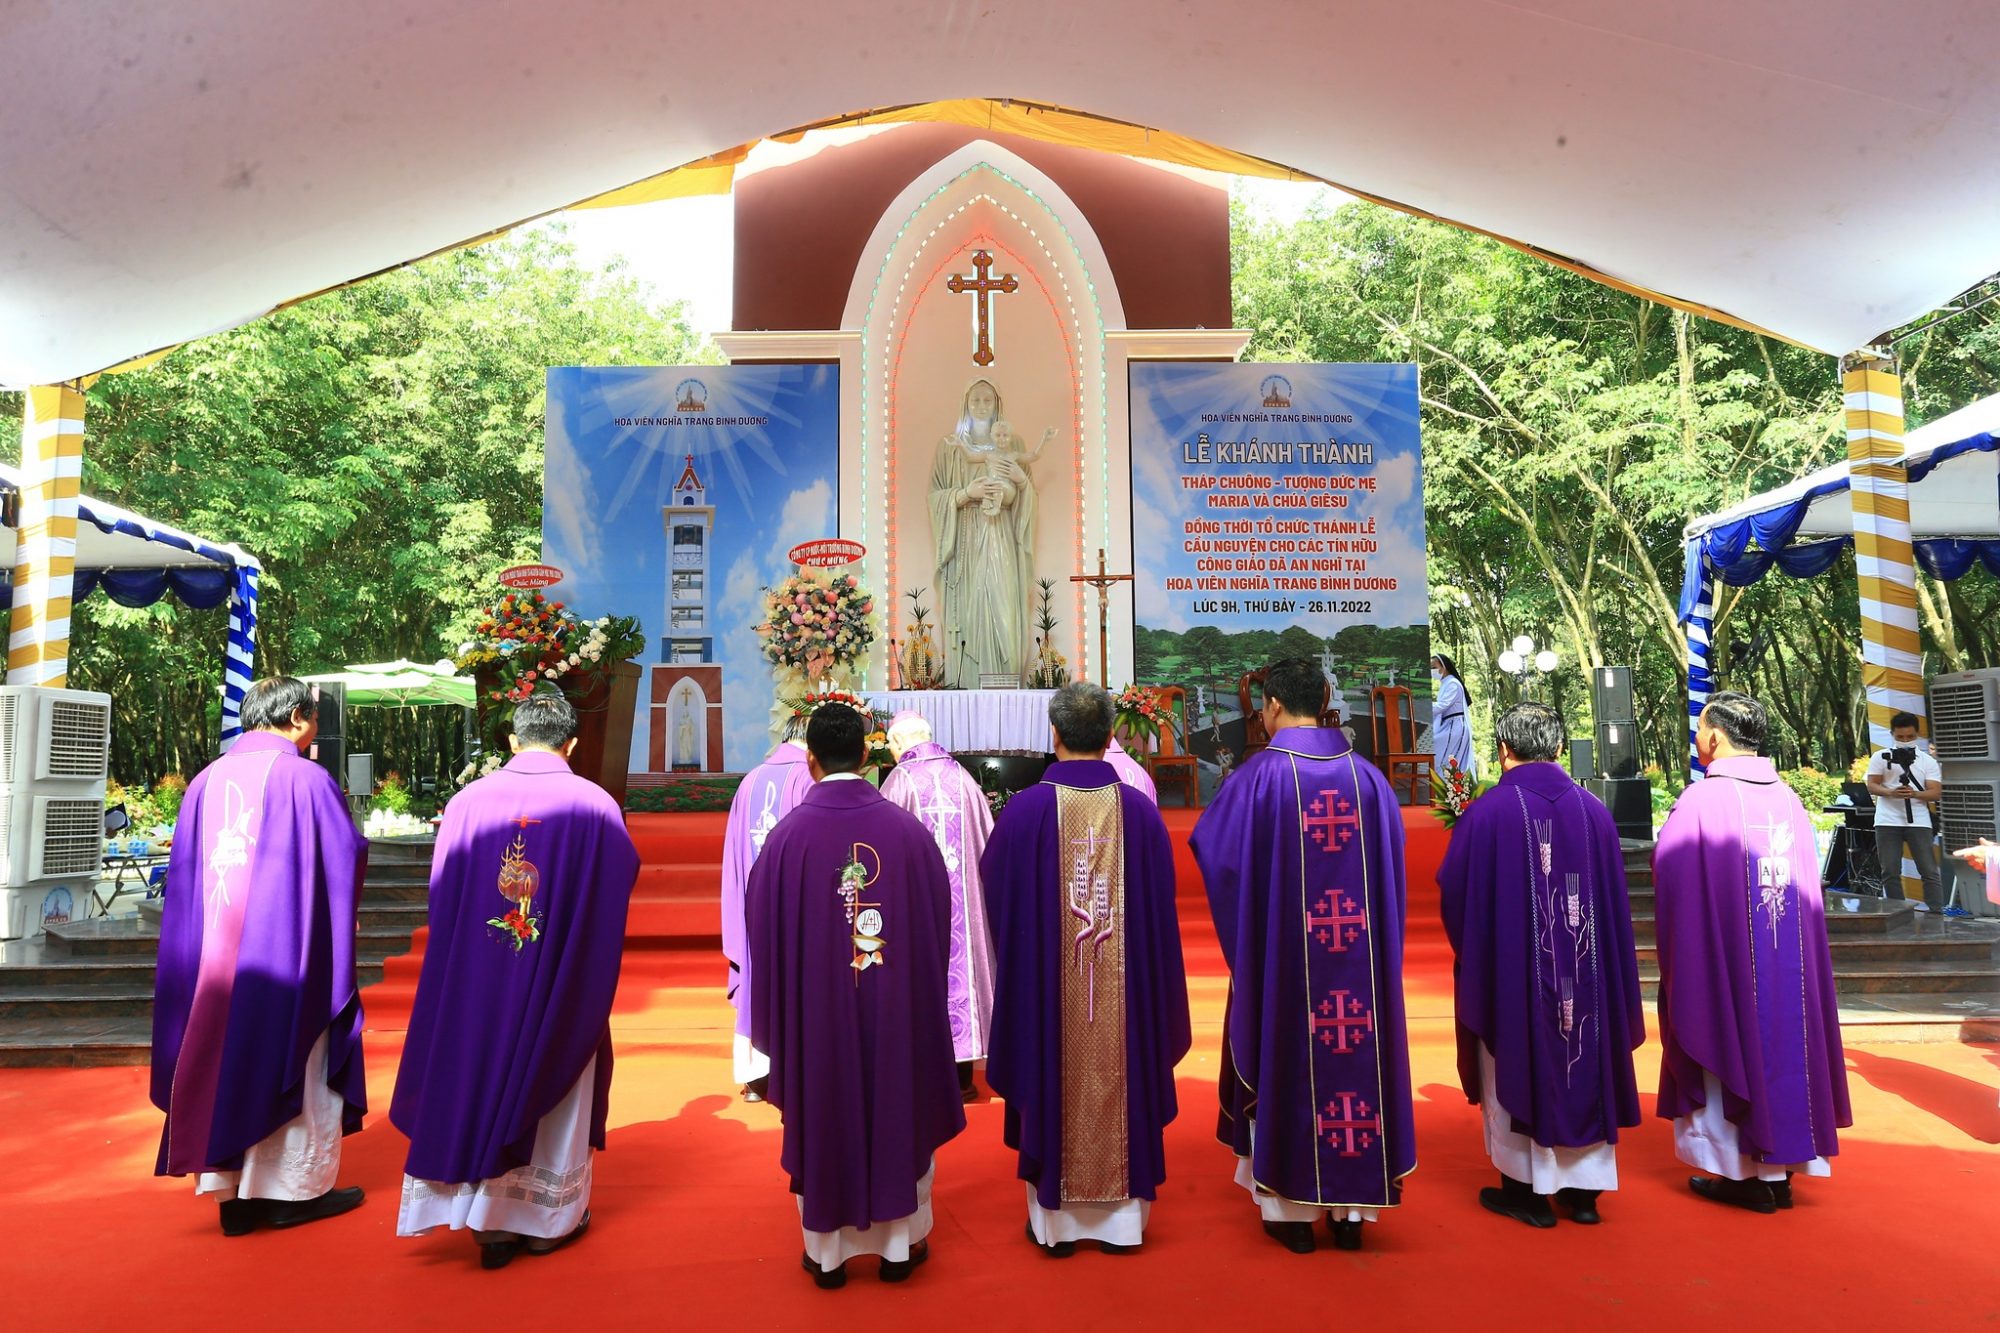 Lễ Cầu Nguyện Cho Các Tín Hữu Công Giáo Đã An Nghỉ Tại Hoa Viên Nghĩa Trang Bình Dương